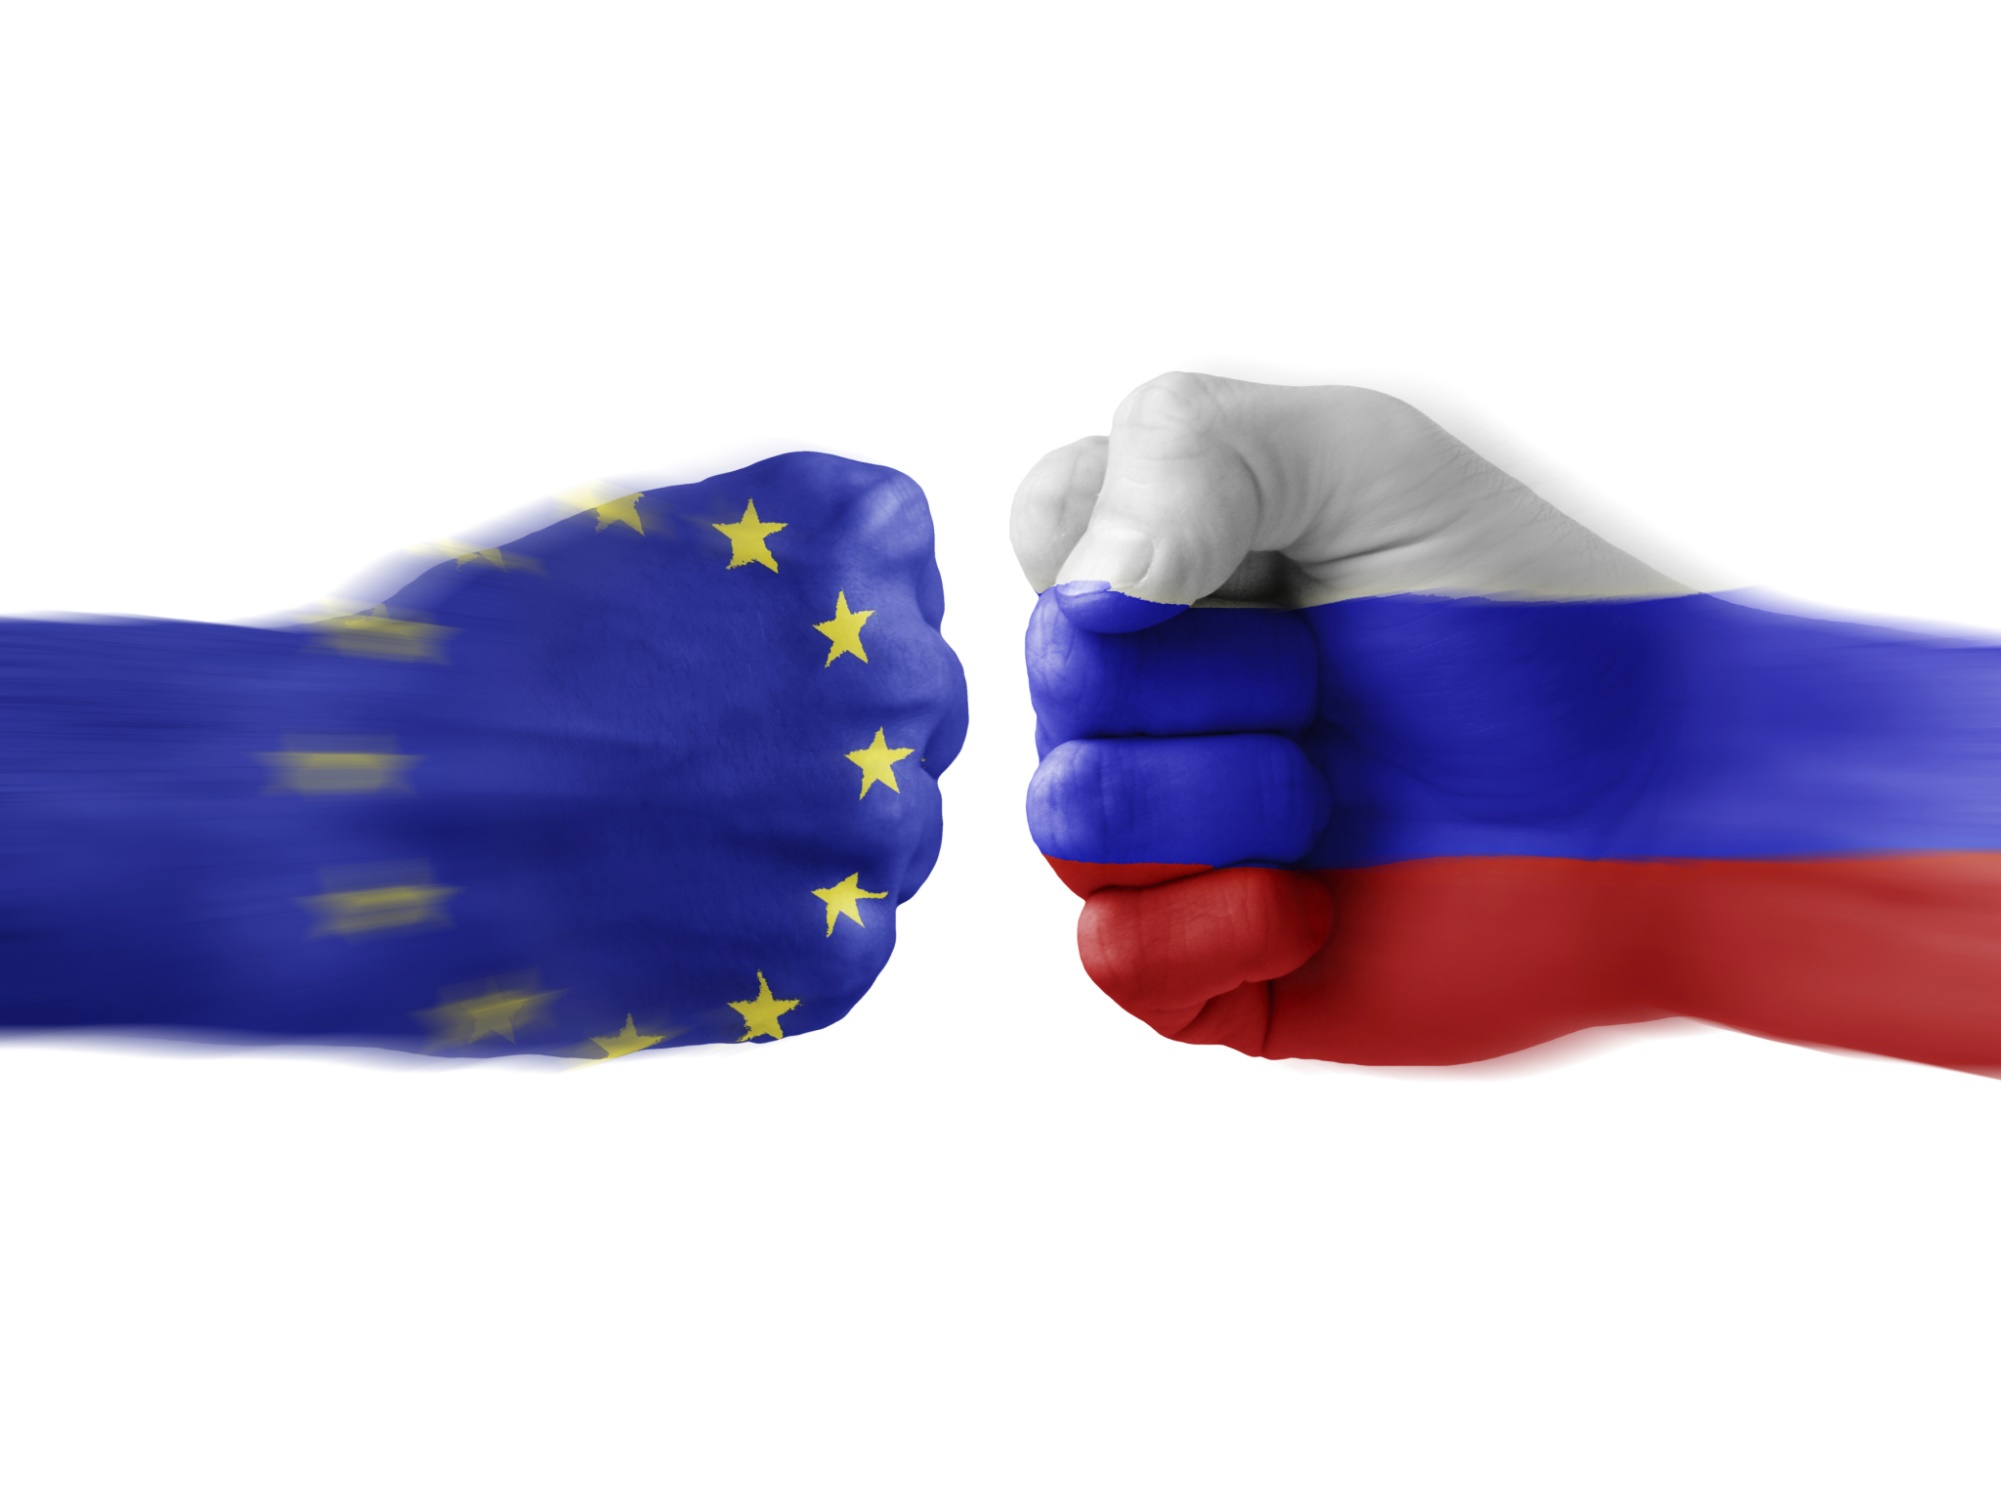  هشدار روسیه به اتحادیه اروپا